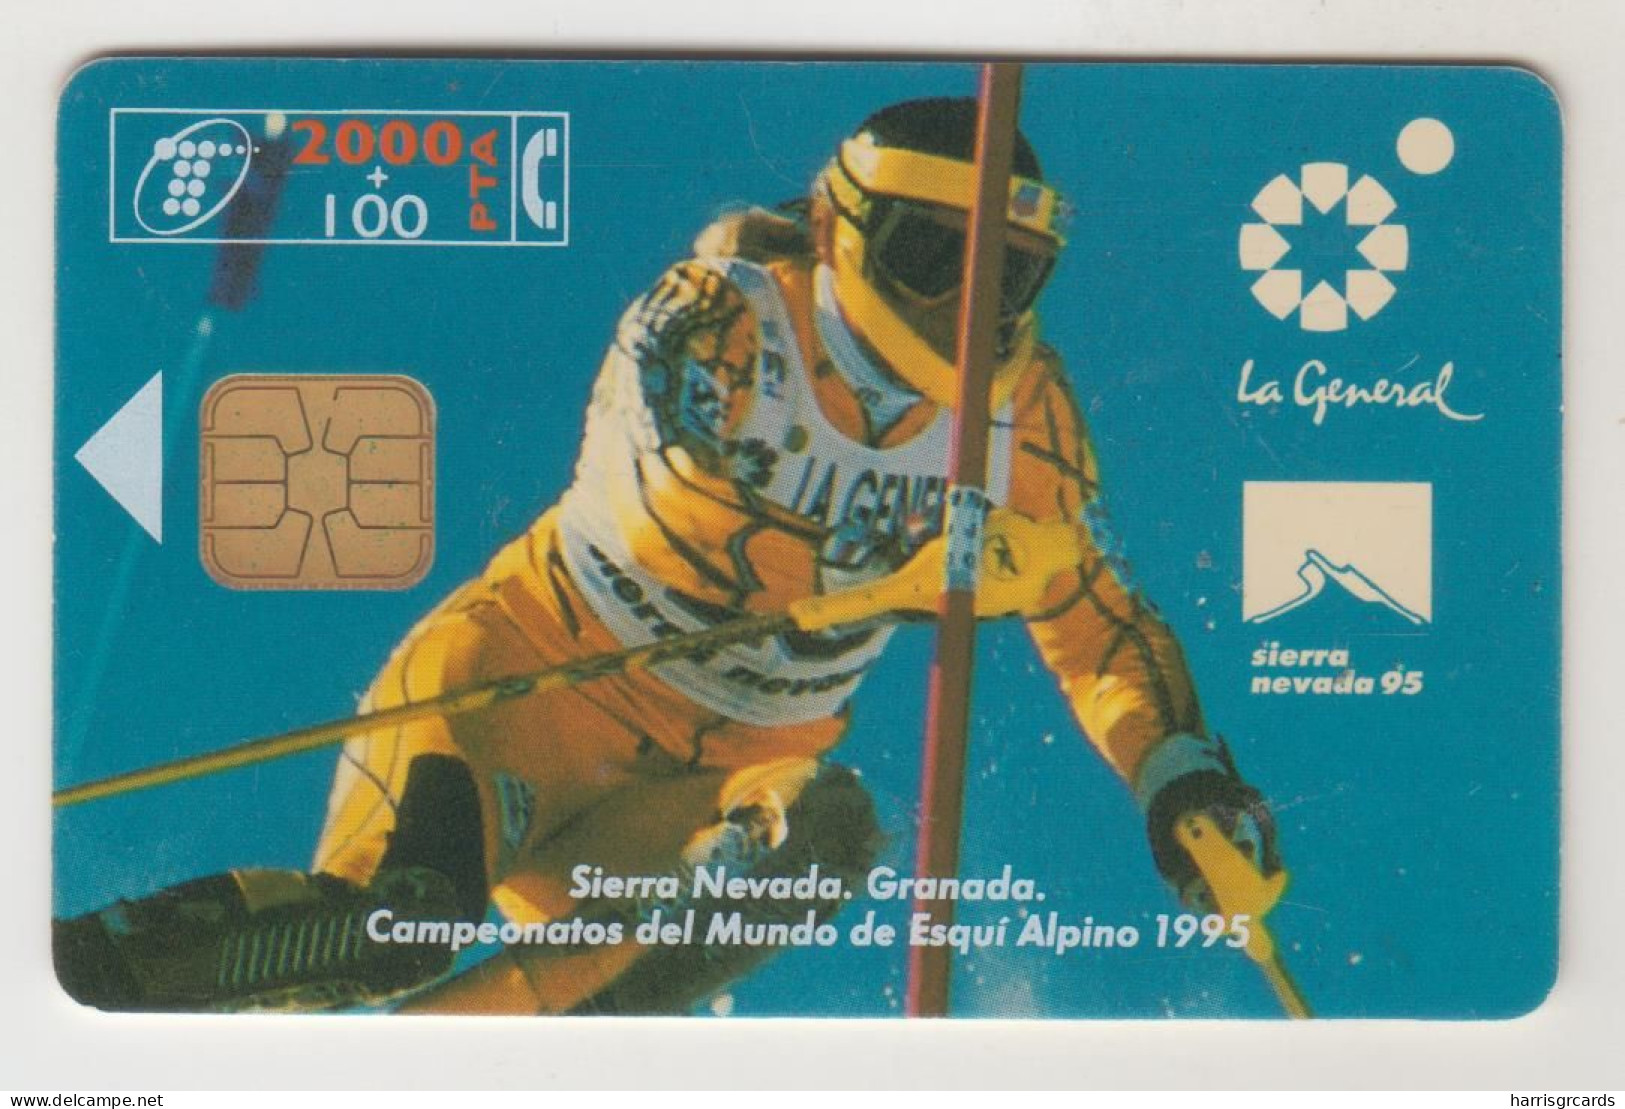 SPAIN - Campeonato Mundial Esqui (granada-95), CP-063, 01/95, Tirage 54.000, Used - Privatausgaben